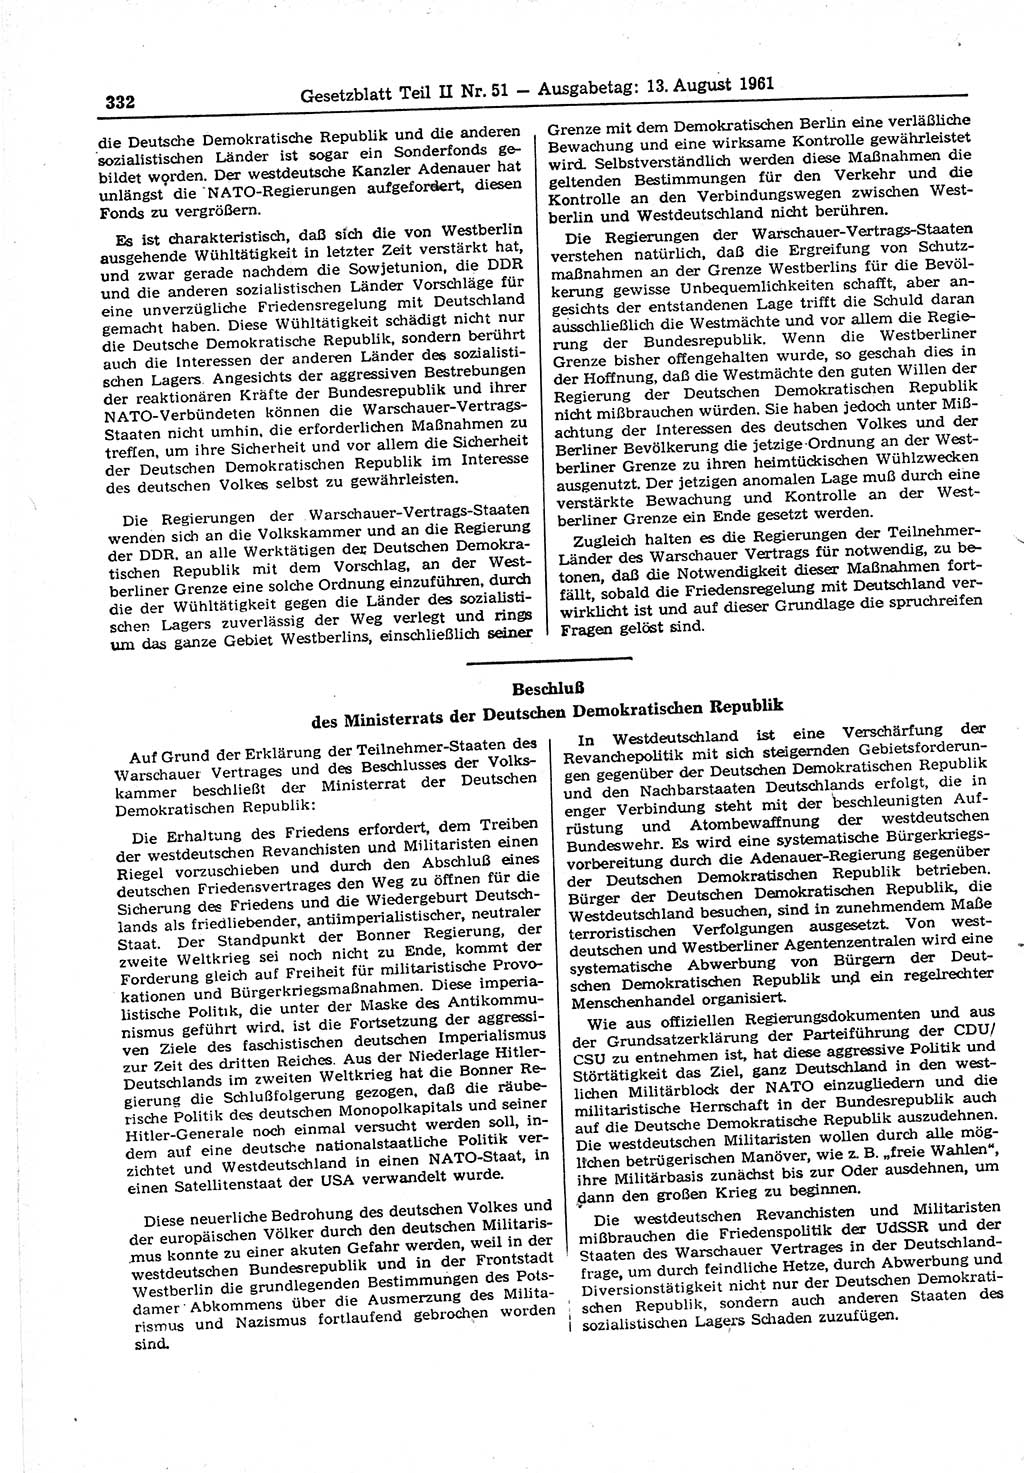 Gesetzblatt (GBl.) der Deutschen Demokratischen Republik (DDR) Teil ⅠⅠ 1961, Seite 332 (GBl. DDR ⅠⅠ 1961, S. 332)